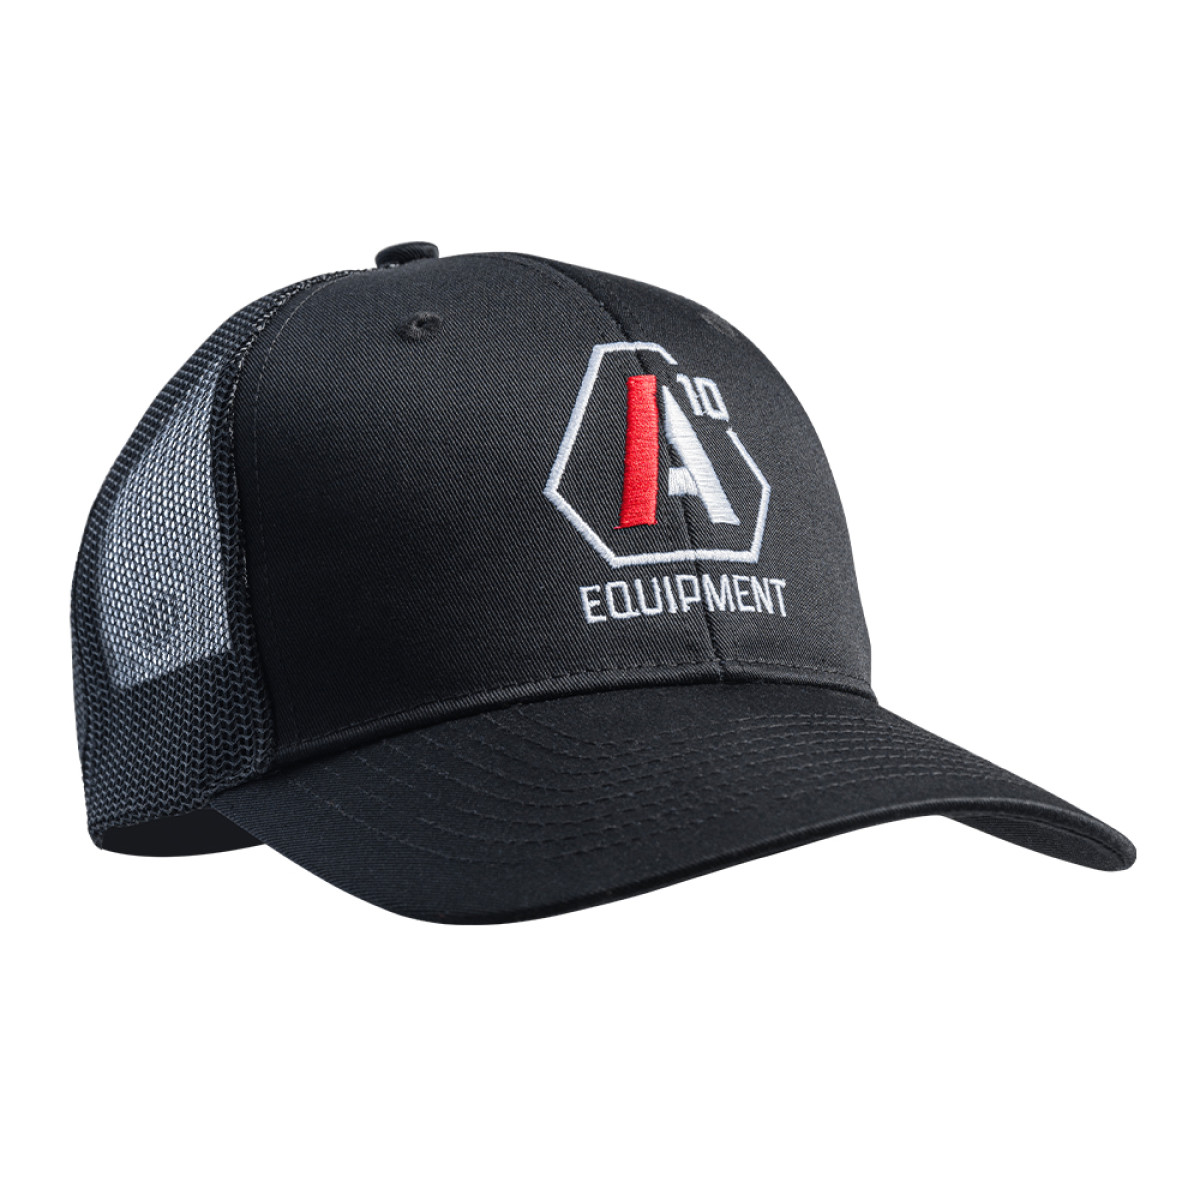 Casquette snapback SIGNATURE noir logo blanc/rouge A10 Equipment